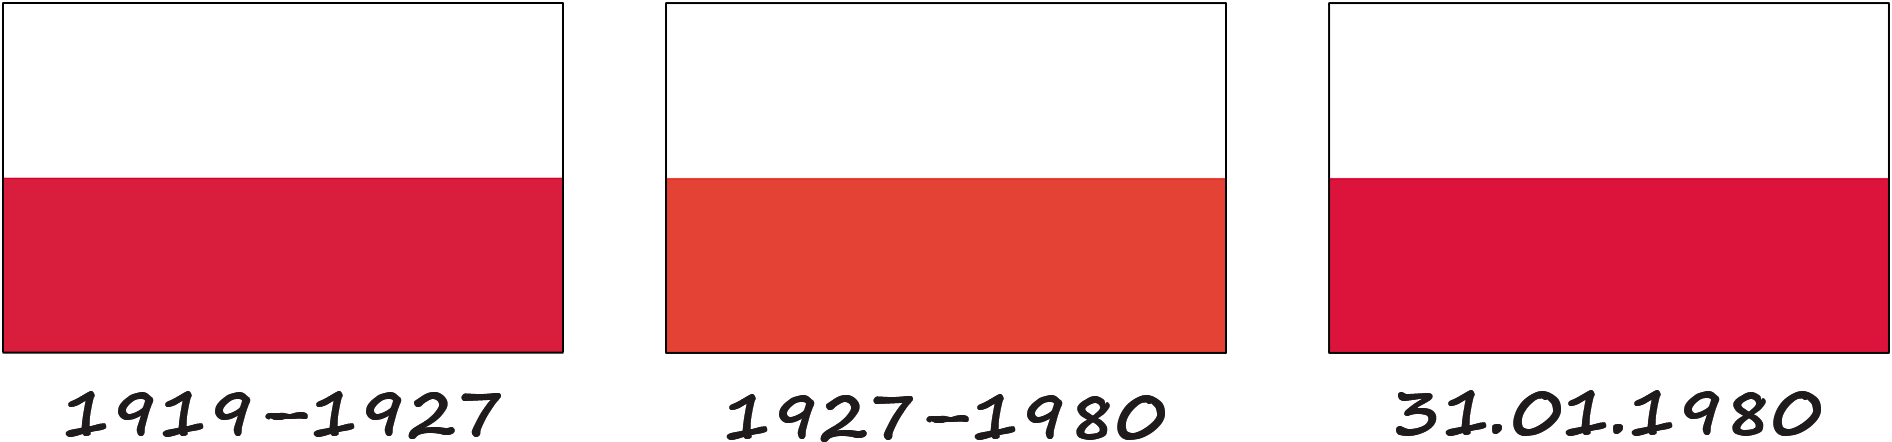 History of the Polish flag